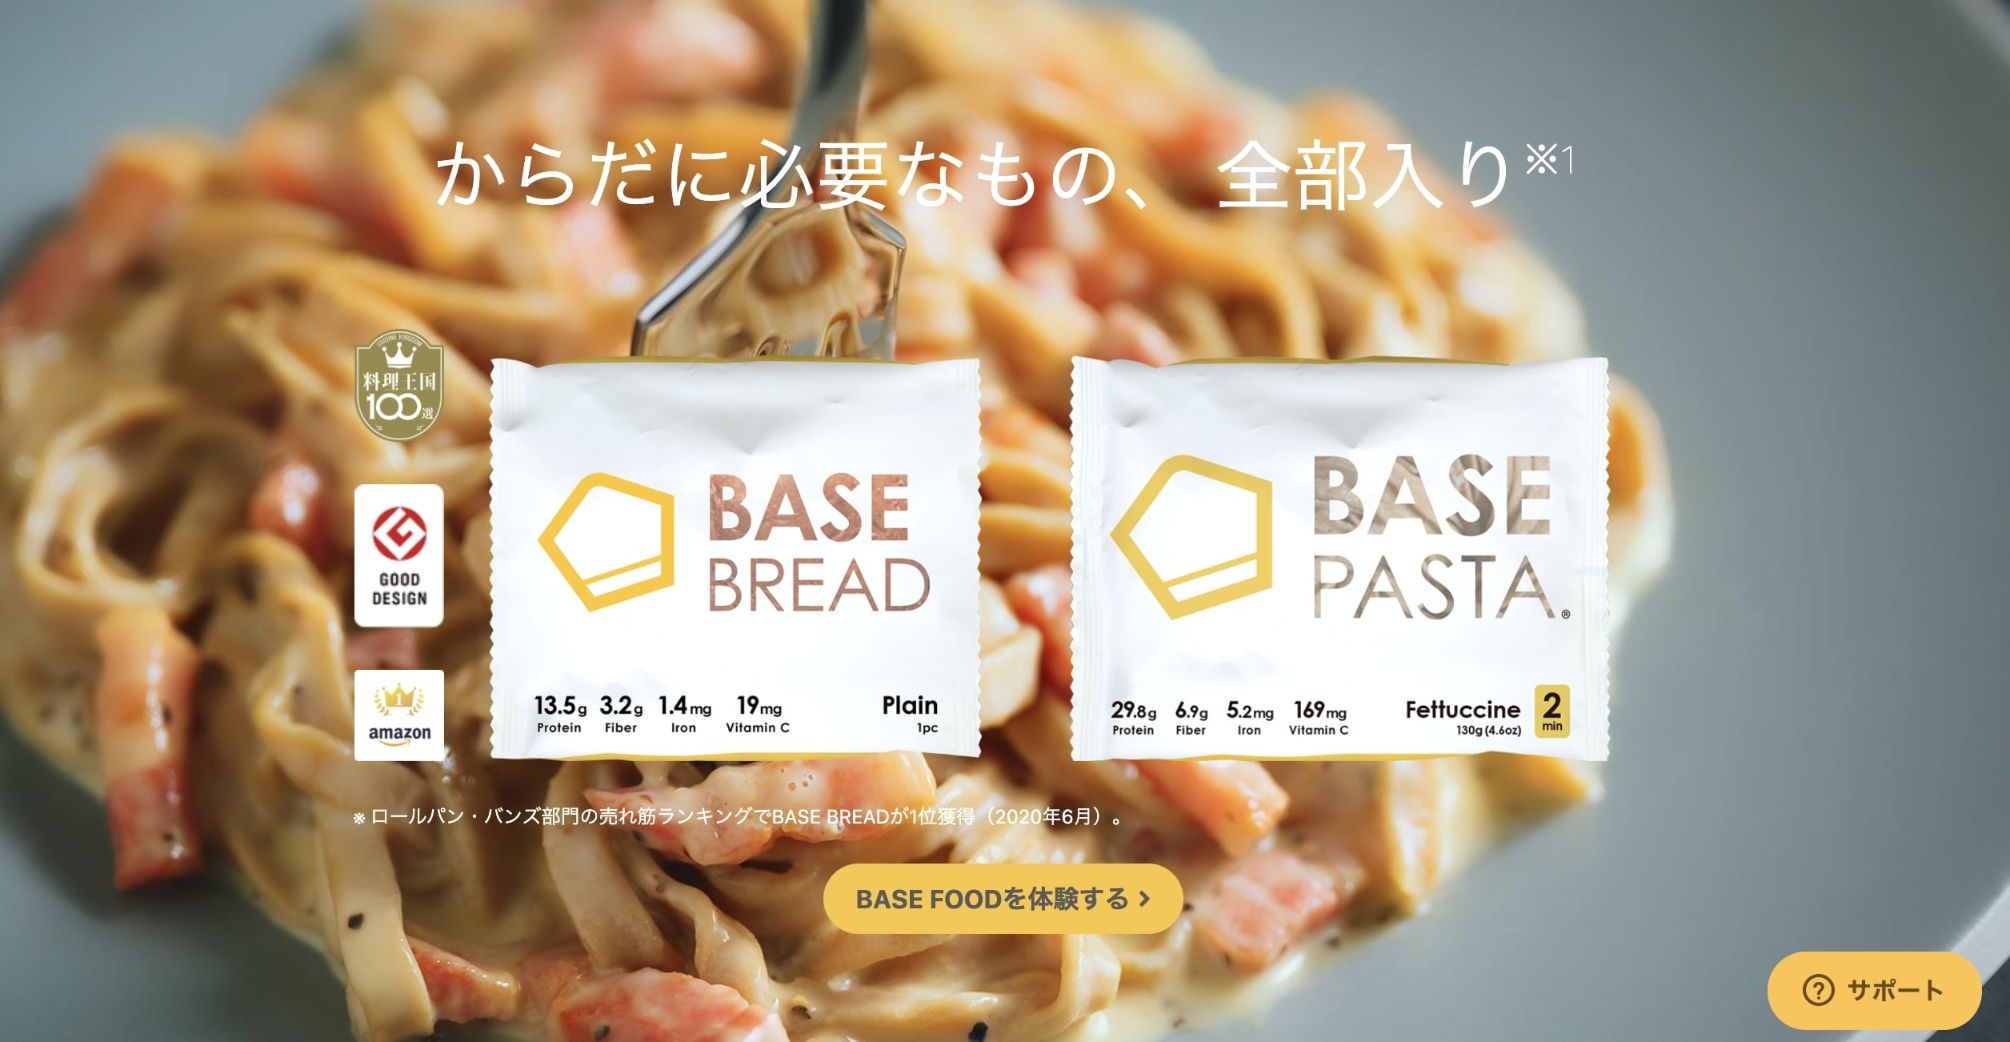 base_01